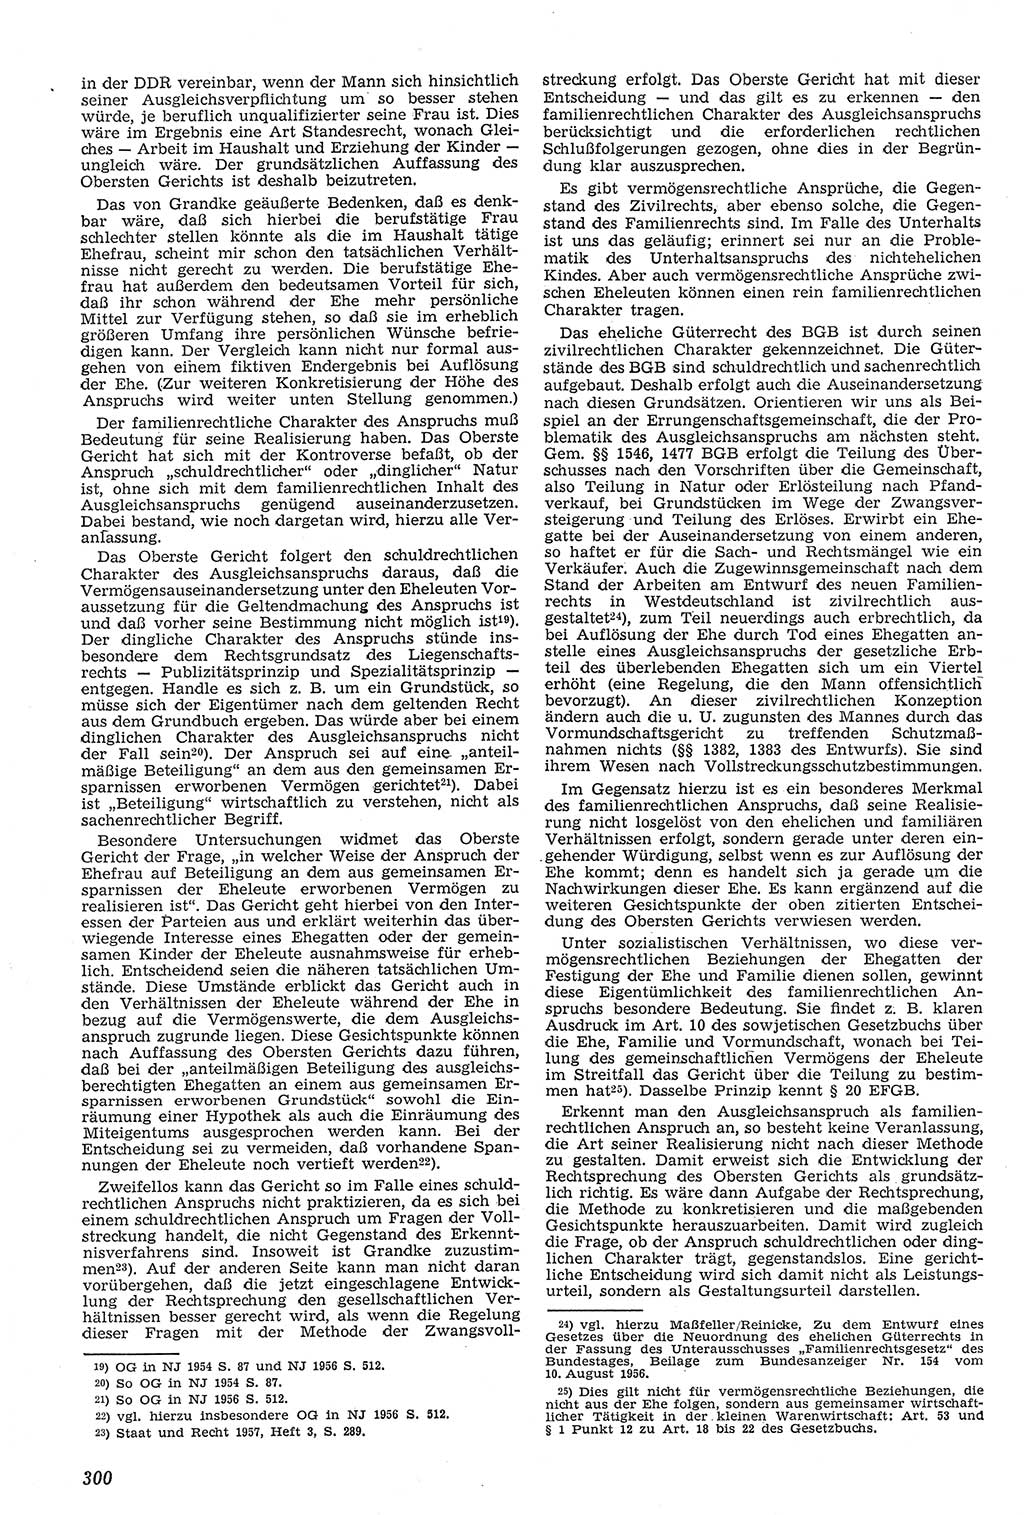 Neue Justiz (NJ), Zeitschrift für Recht und Rechtswissenschaft [Deutsche Demokratische Republik (DDR)], 11. Jahrgang 1957, Seite 300 (NJ DDR 1957, S. 300)